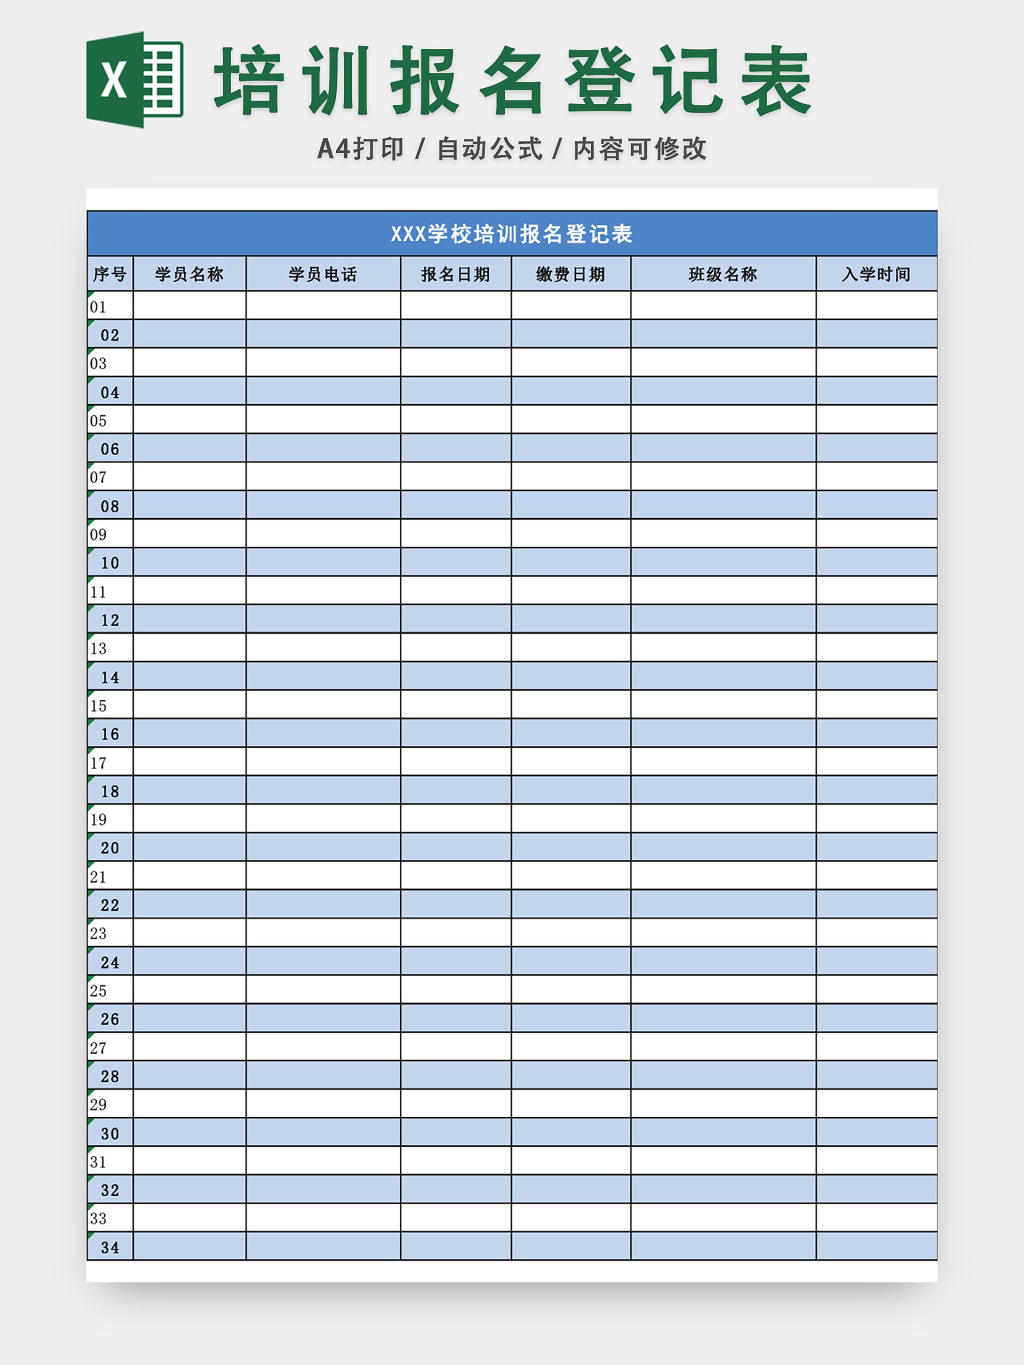 成人高等教育毕业生登记表excel格式下载-华军软件园